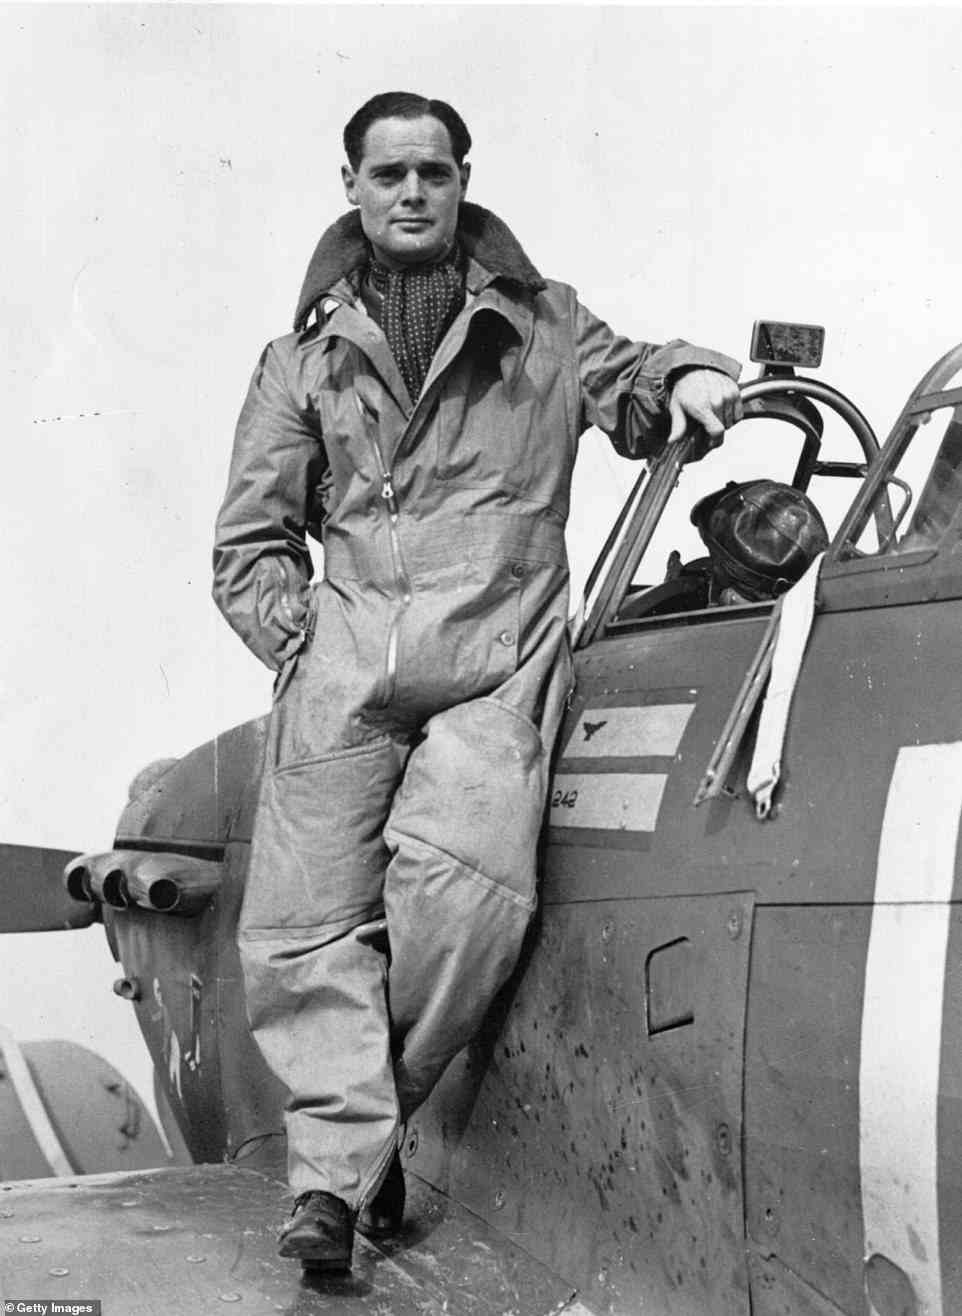 Im Bild: Sir Douglas ist einer der berühmtesten Piloten der Royal Air Force, der bei einem Flugzeugabsturz beide Beine verlor, aber im Zweiten Weltkrieg als Pilot diente